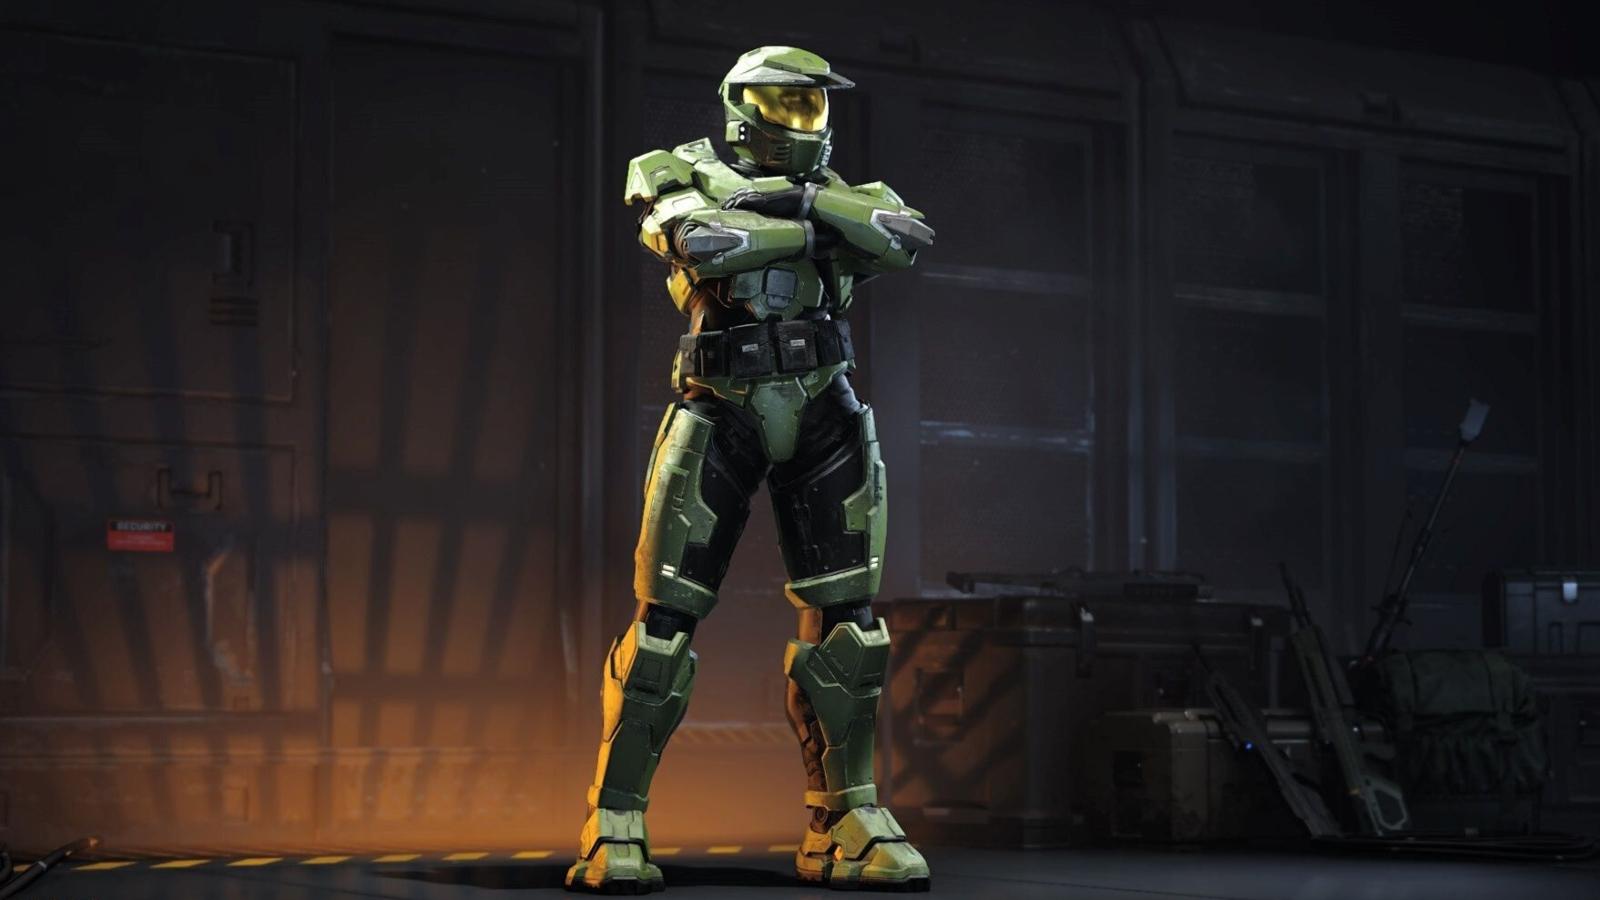 Halo CE's Mark V armor in Halo Infinite